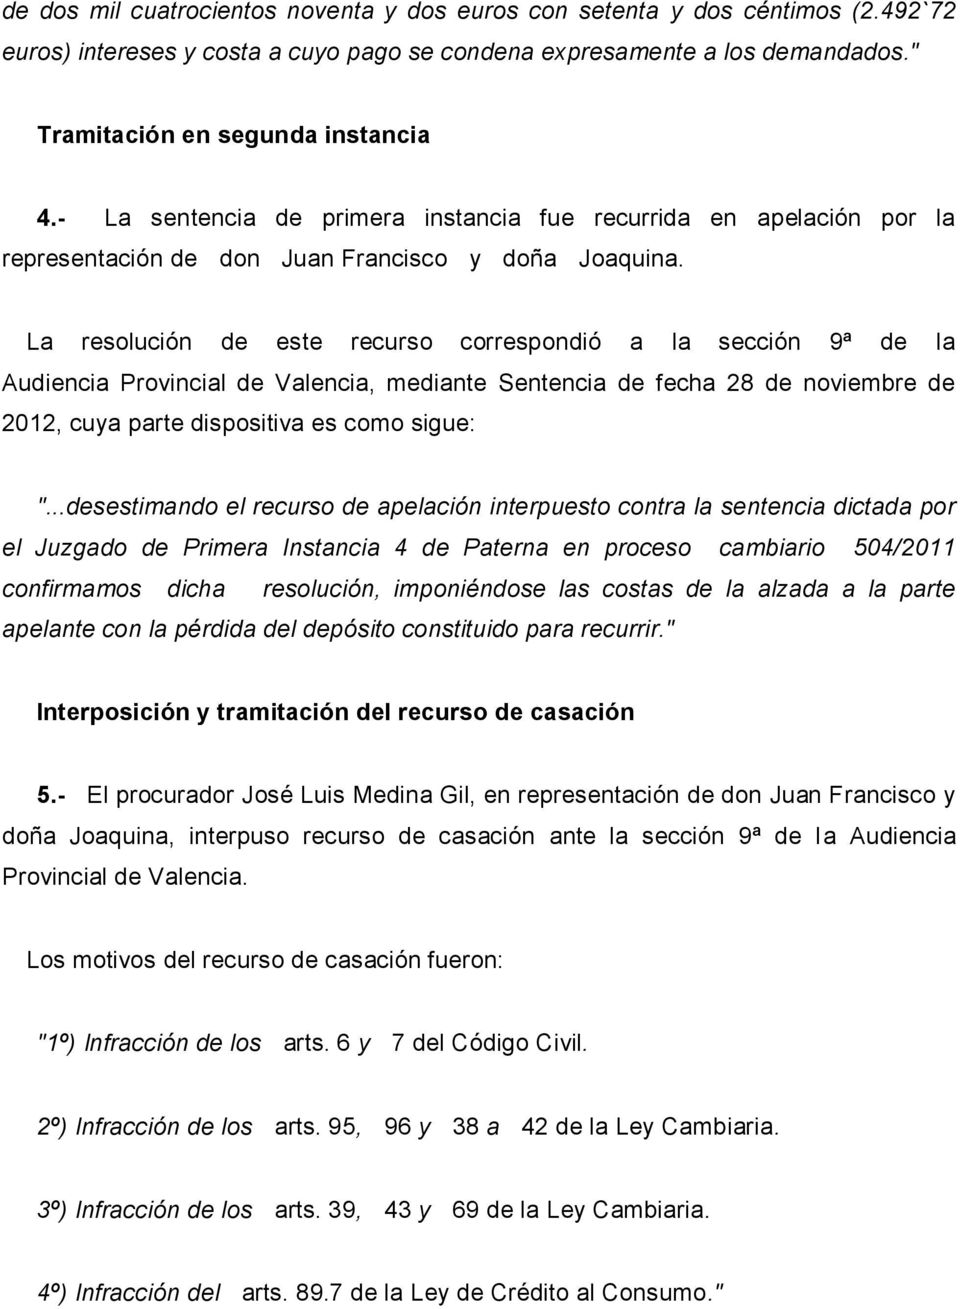 La resolución de este recurso correspondió a la sección 9ª de la Audiencia Provincial de Valencia, mediante Sentencia de fecha 28 de noviembre de 2012, cuya parte dispositiva es como sigue: ".